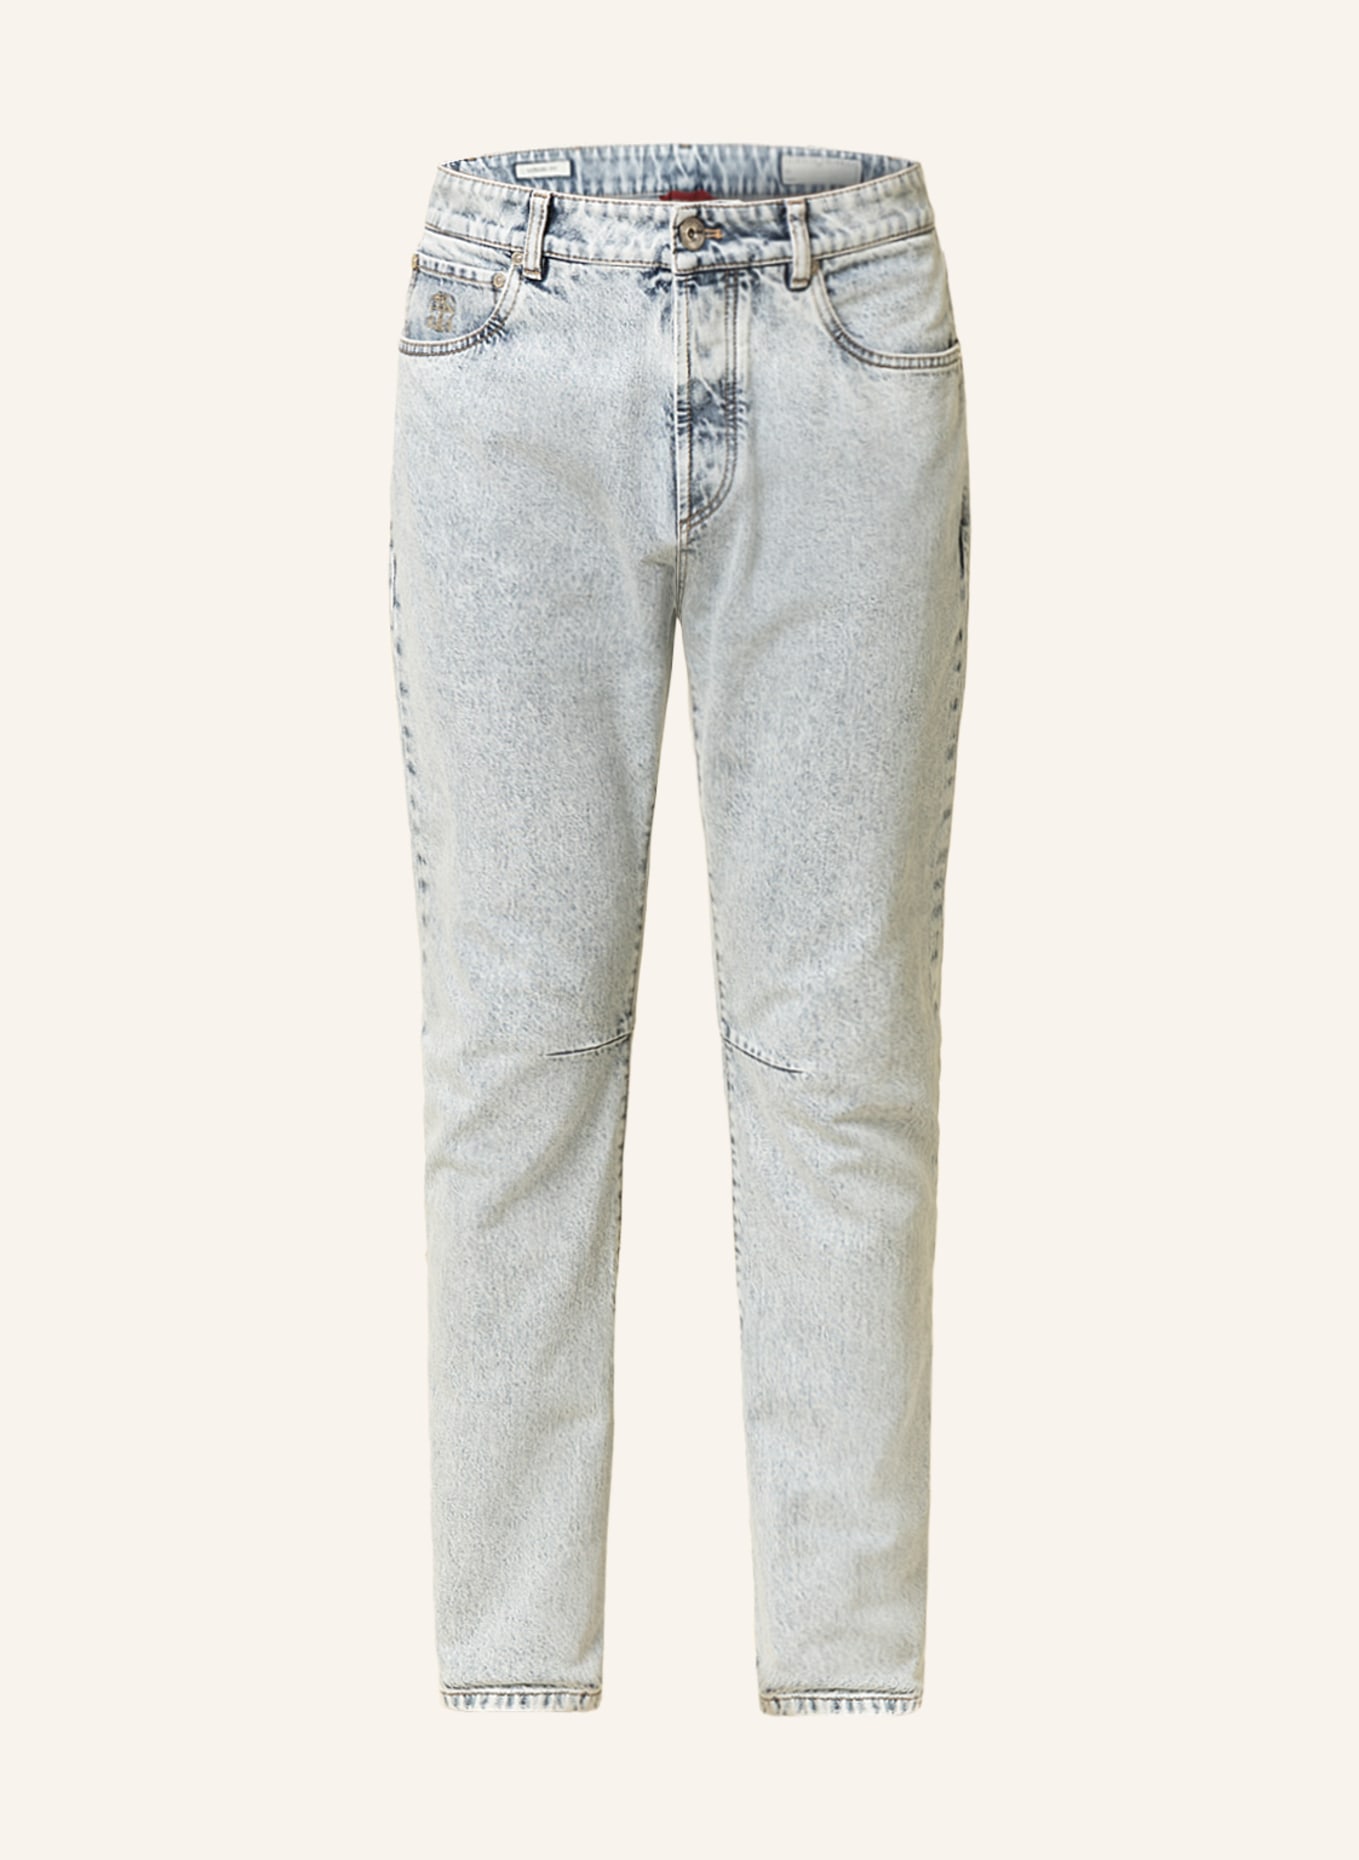 BRUNELLO CUCINELLI Jeans Leisure Fit, Farbe: C8300 Blue (Bild 1)